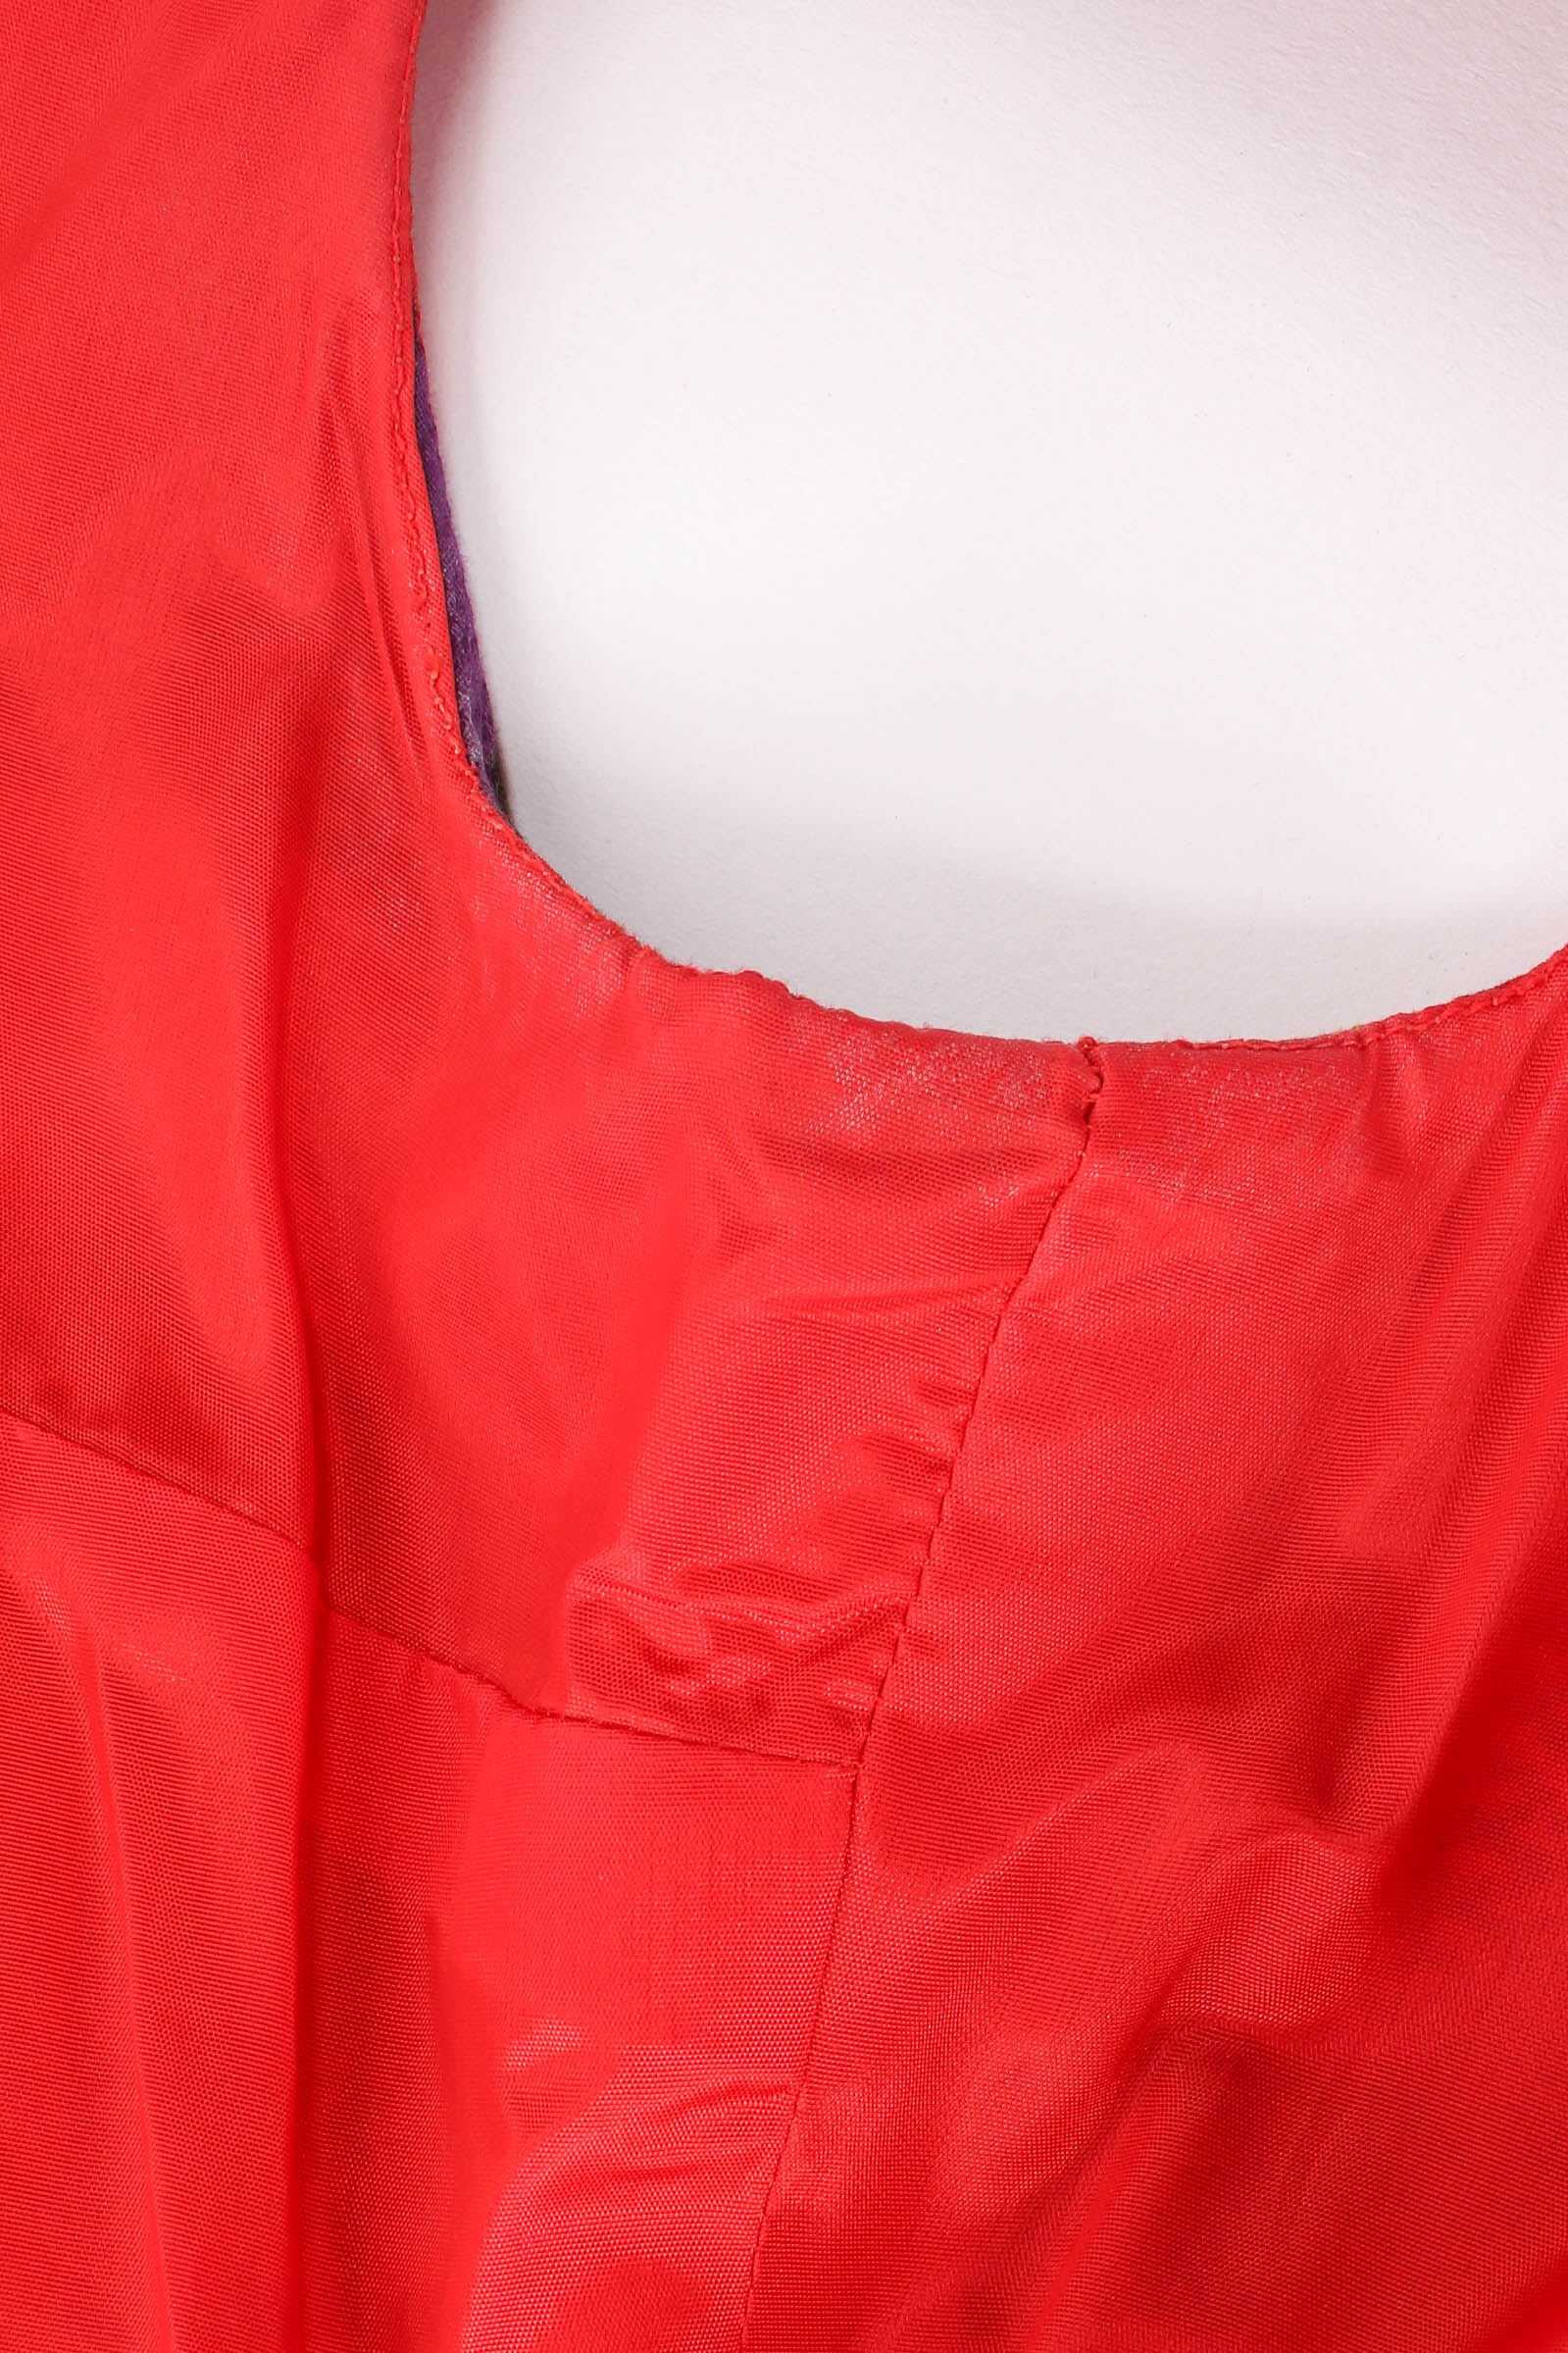 Vintage Lanvin Geo Ikat Print Dress R side armpit stains @ Recess LA